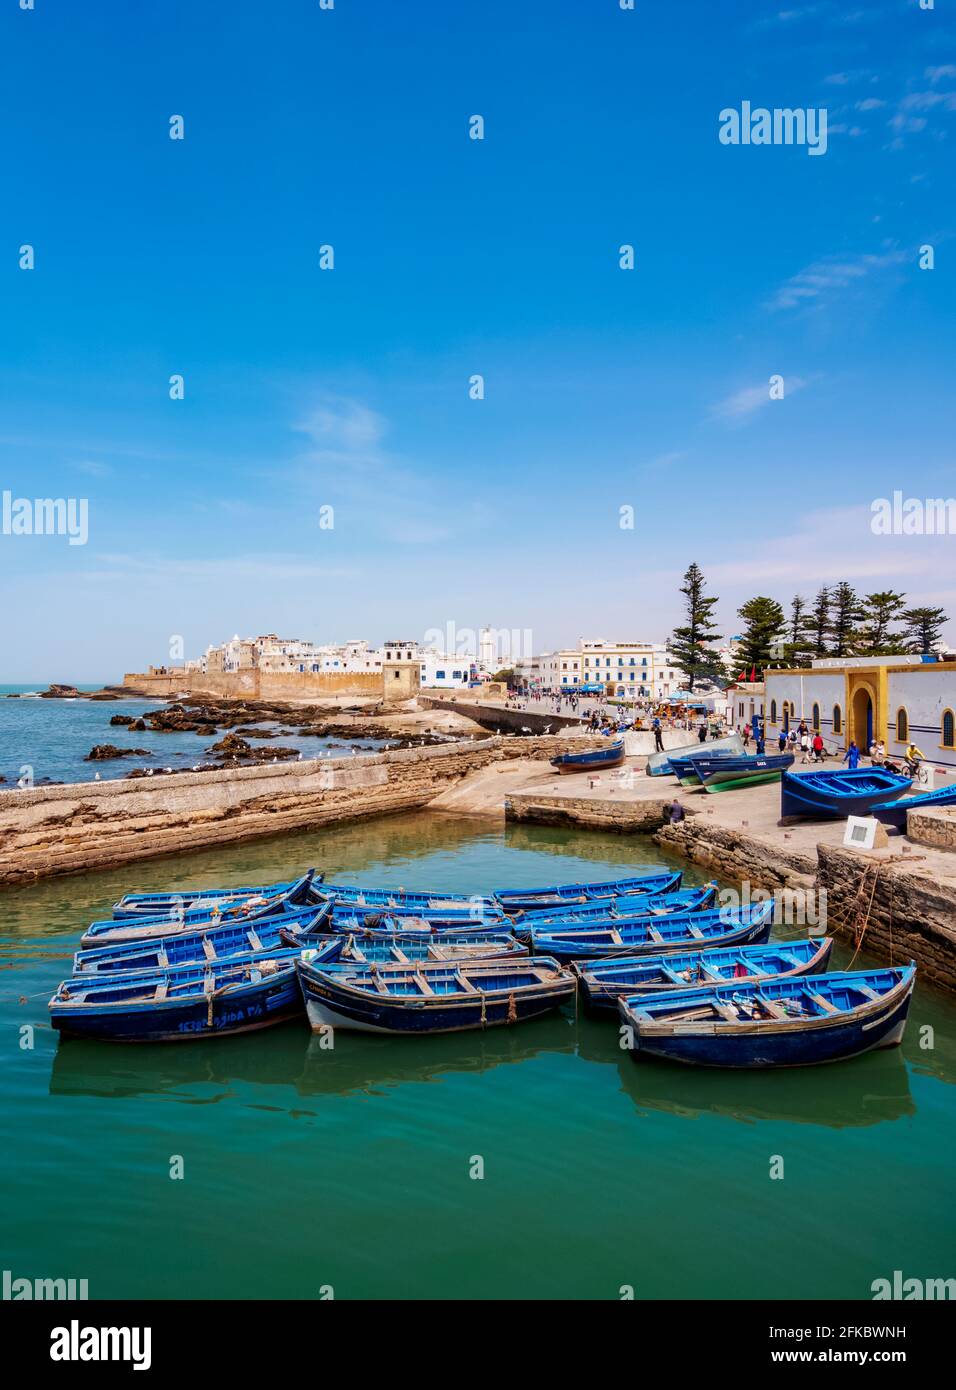 Stadtbild mit blauen Booten im Scala Hafen und der Medina Stadtmauer, Essaouira, Marrakesch-Safi Region, Marokko, Nordafrika, Afrika Stockfoto